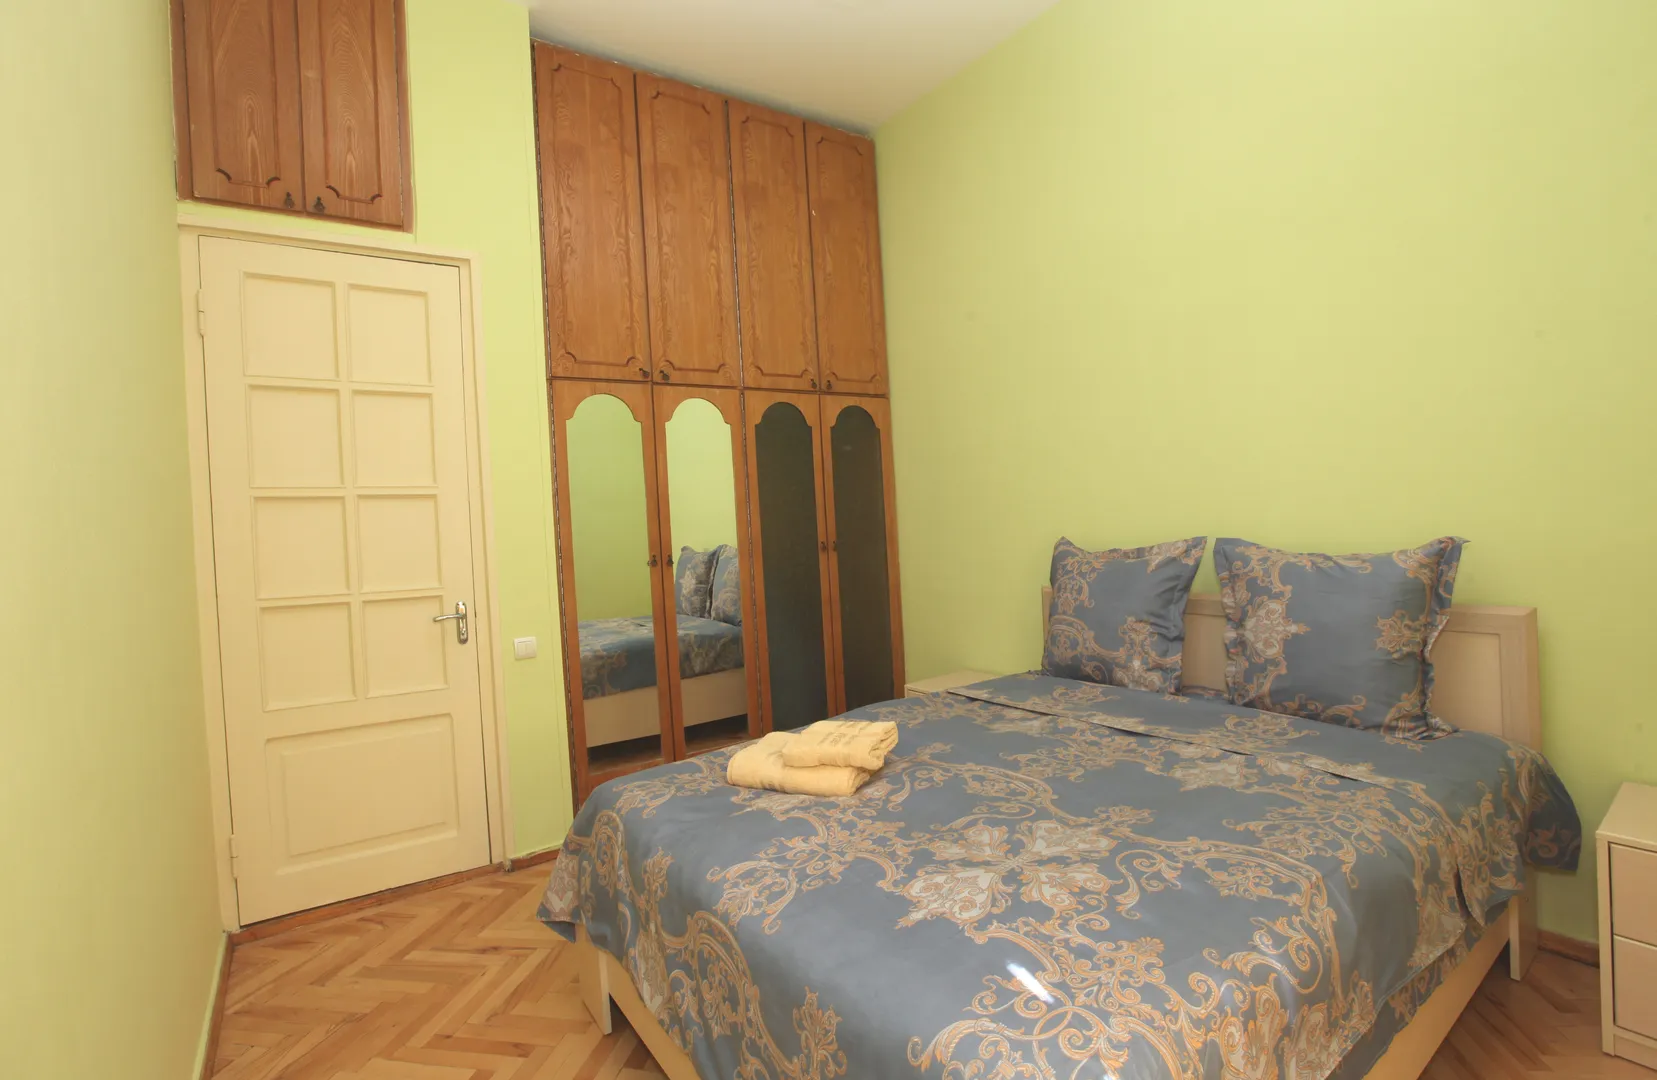 Спальня N2, одна двухместная кровать, гардероб в комнате